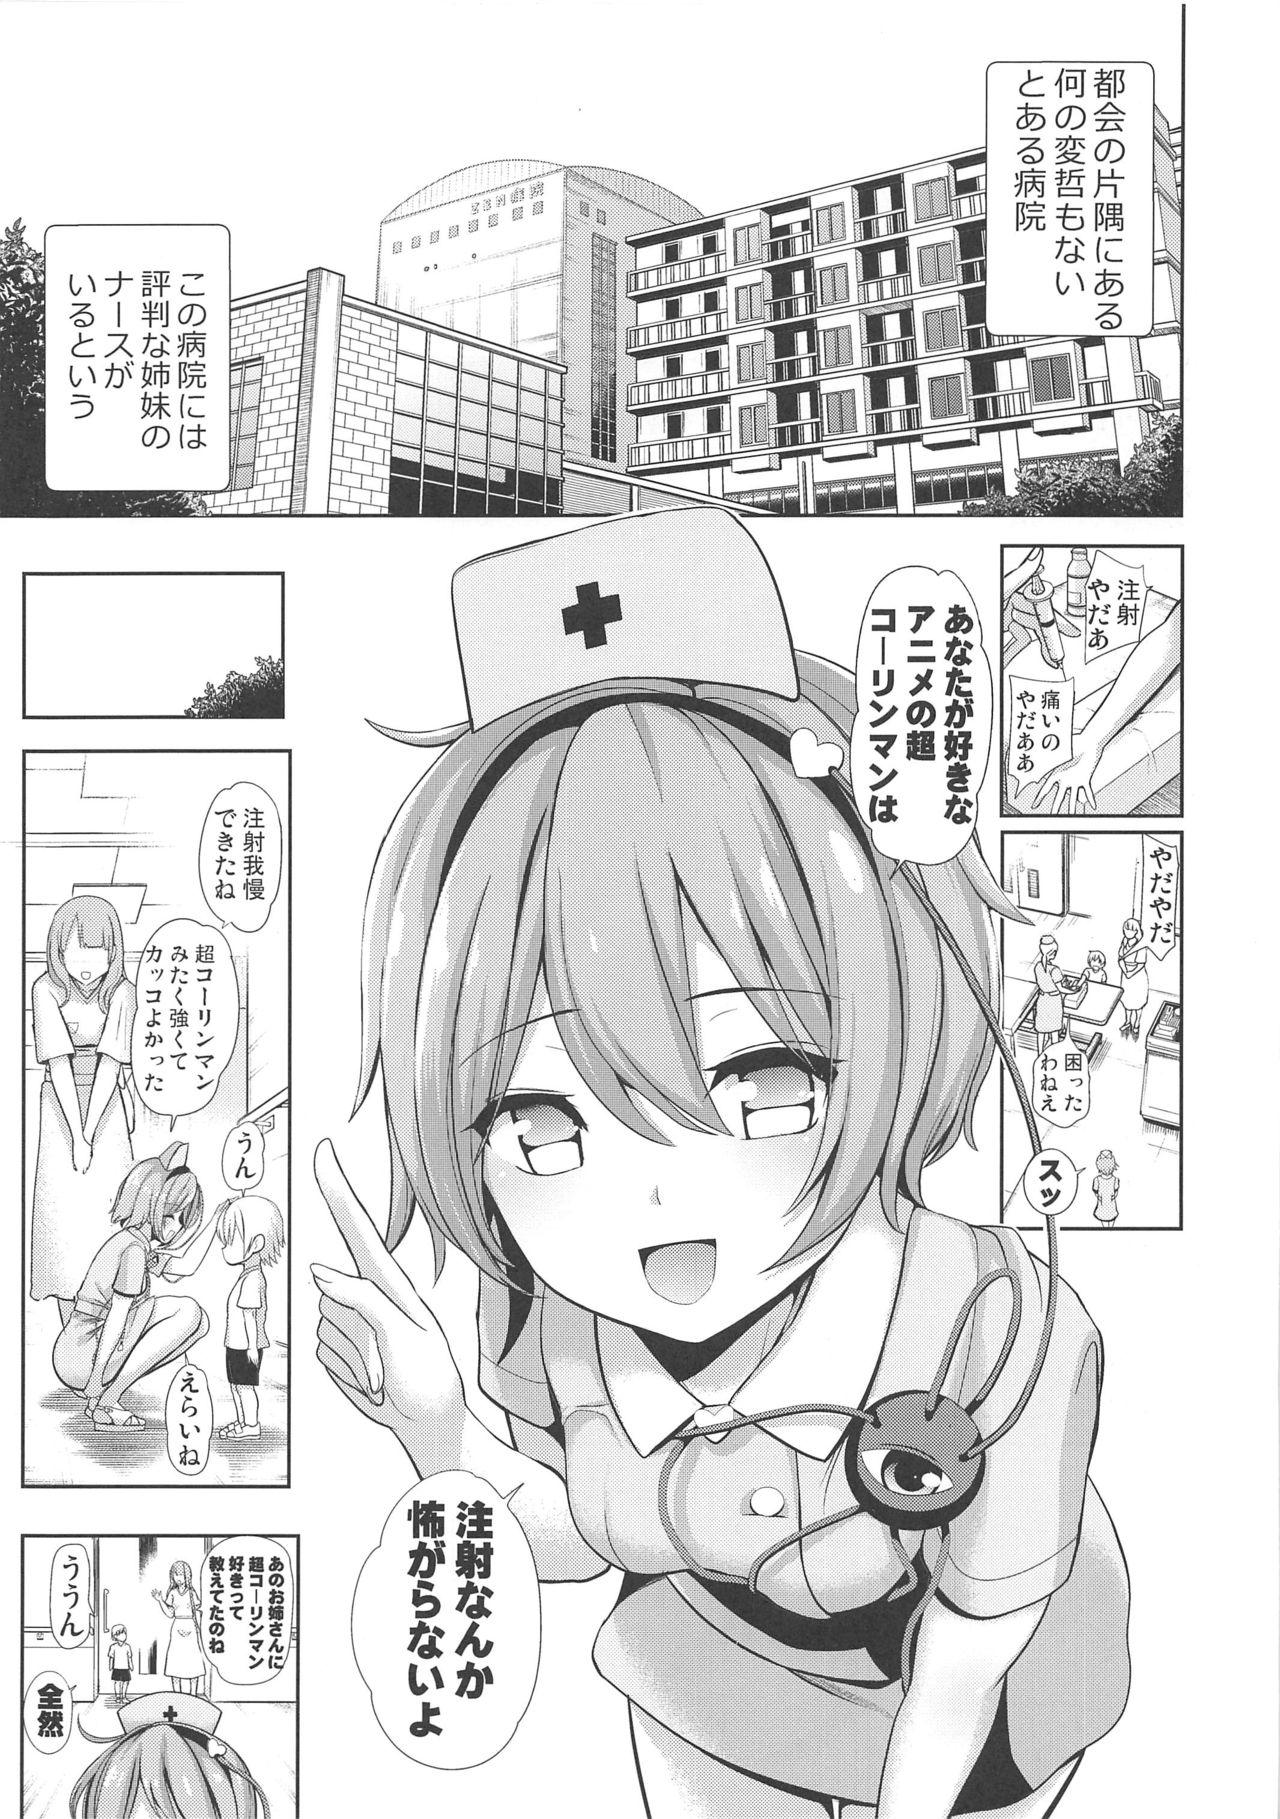 Komeiji Nurse no Echi Echi Kango Nisshi 2